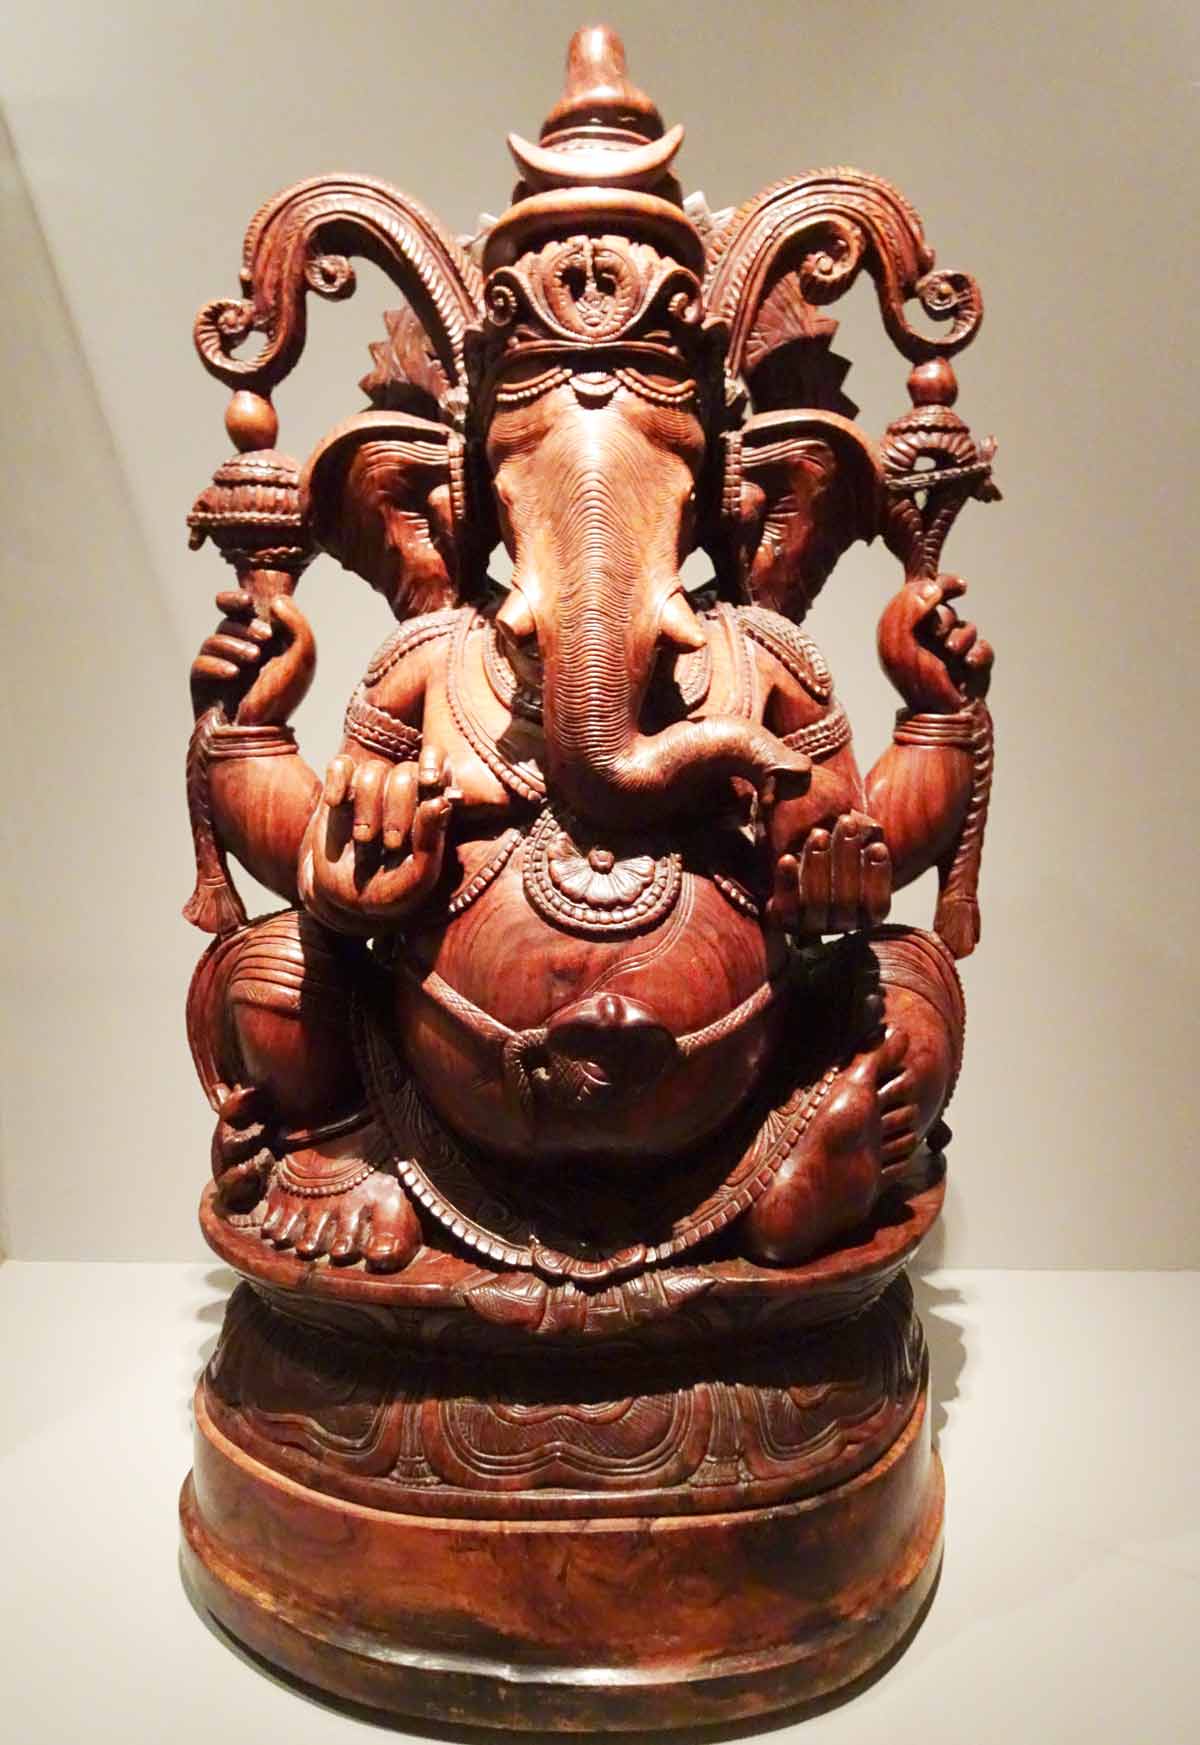 Ganescha geschnitzt, die Gottheit wird als Helefant mit dickem Bauch, Gürtel, aufwändigem Kopfschmuck, 4 Armen und 2 Beinen dargestellt